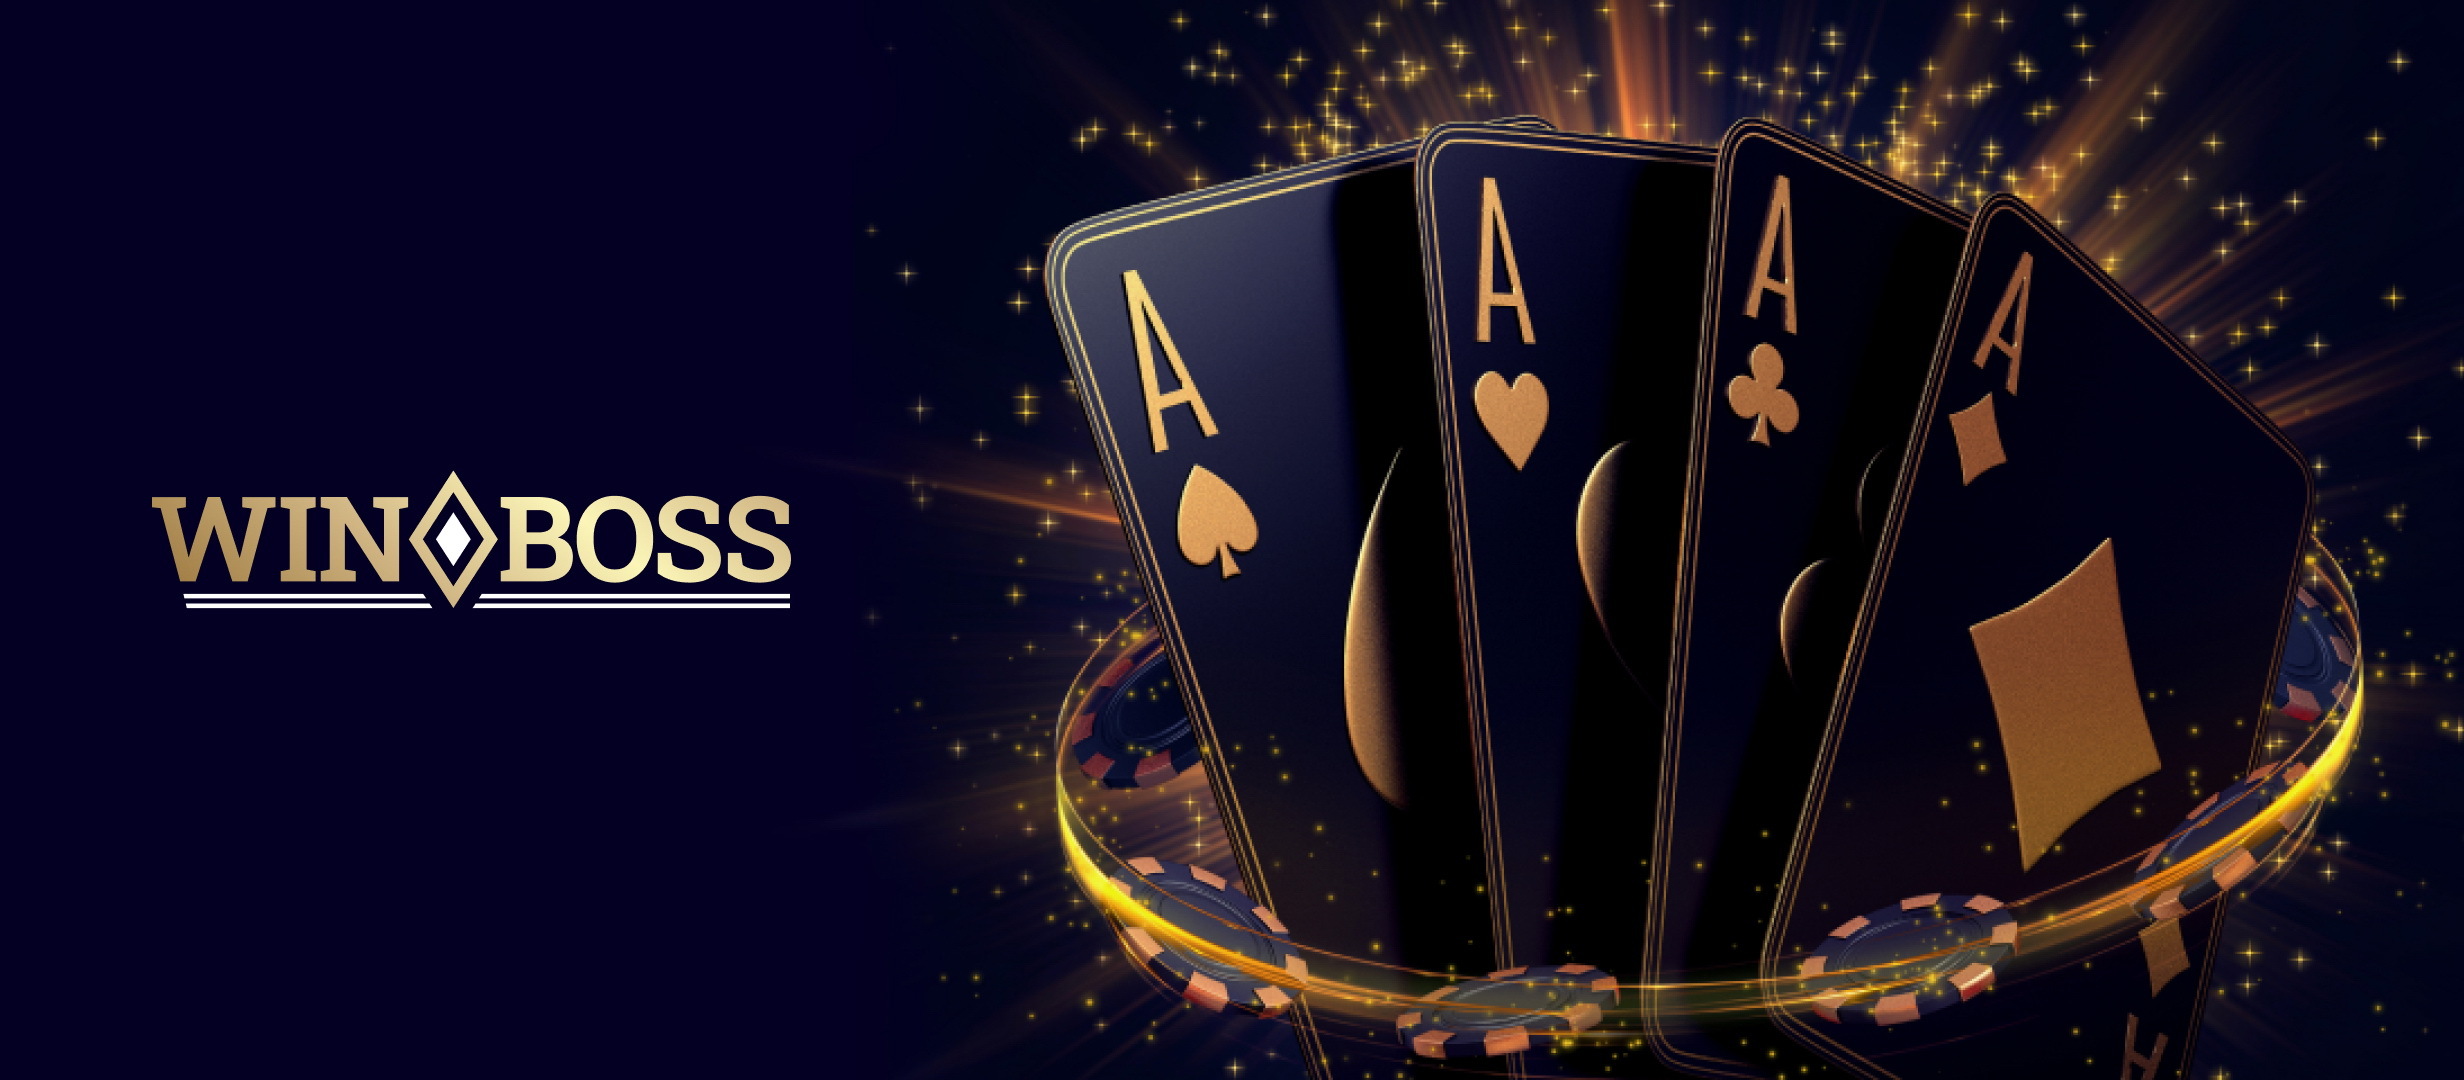 Winboss Cazino: Ce aduce nou in industria jocurilor de noroc